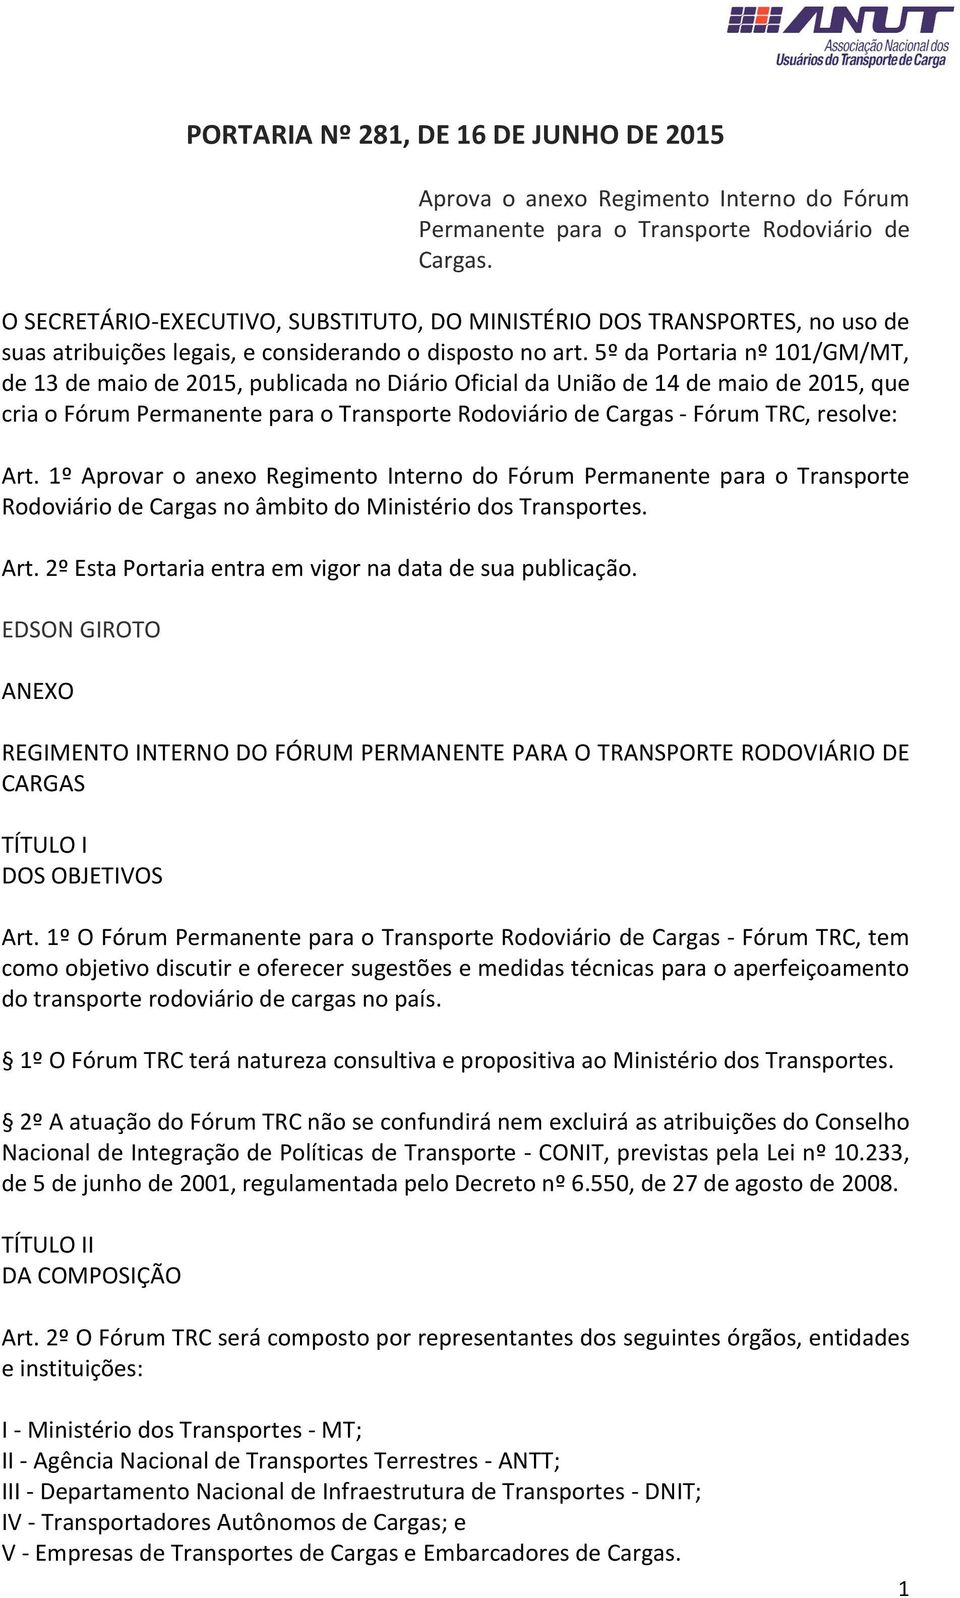 5º da Portaria nº 101/GM/MT, de 13 de maio de 2015, publicada no Diário Oficial da União de 14 de maio de 2015, que cria o Fórum Permanente para o Transporte Rodoviário de Cargas - Fórum TRC,